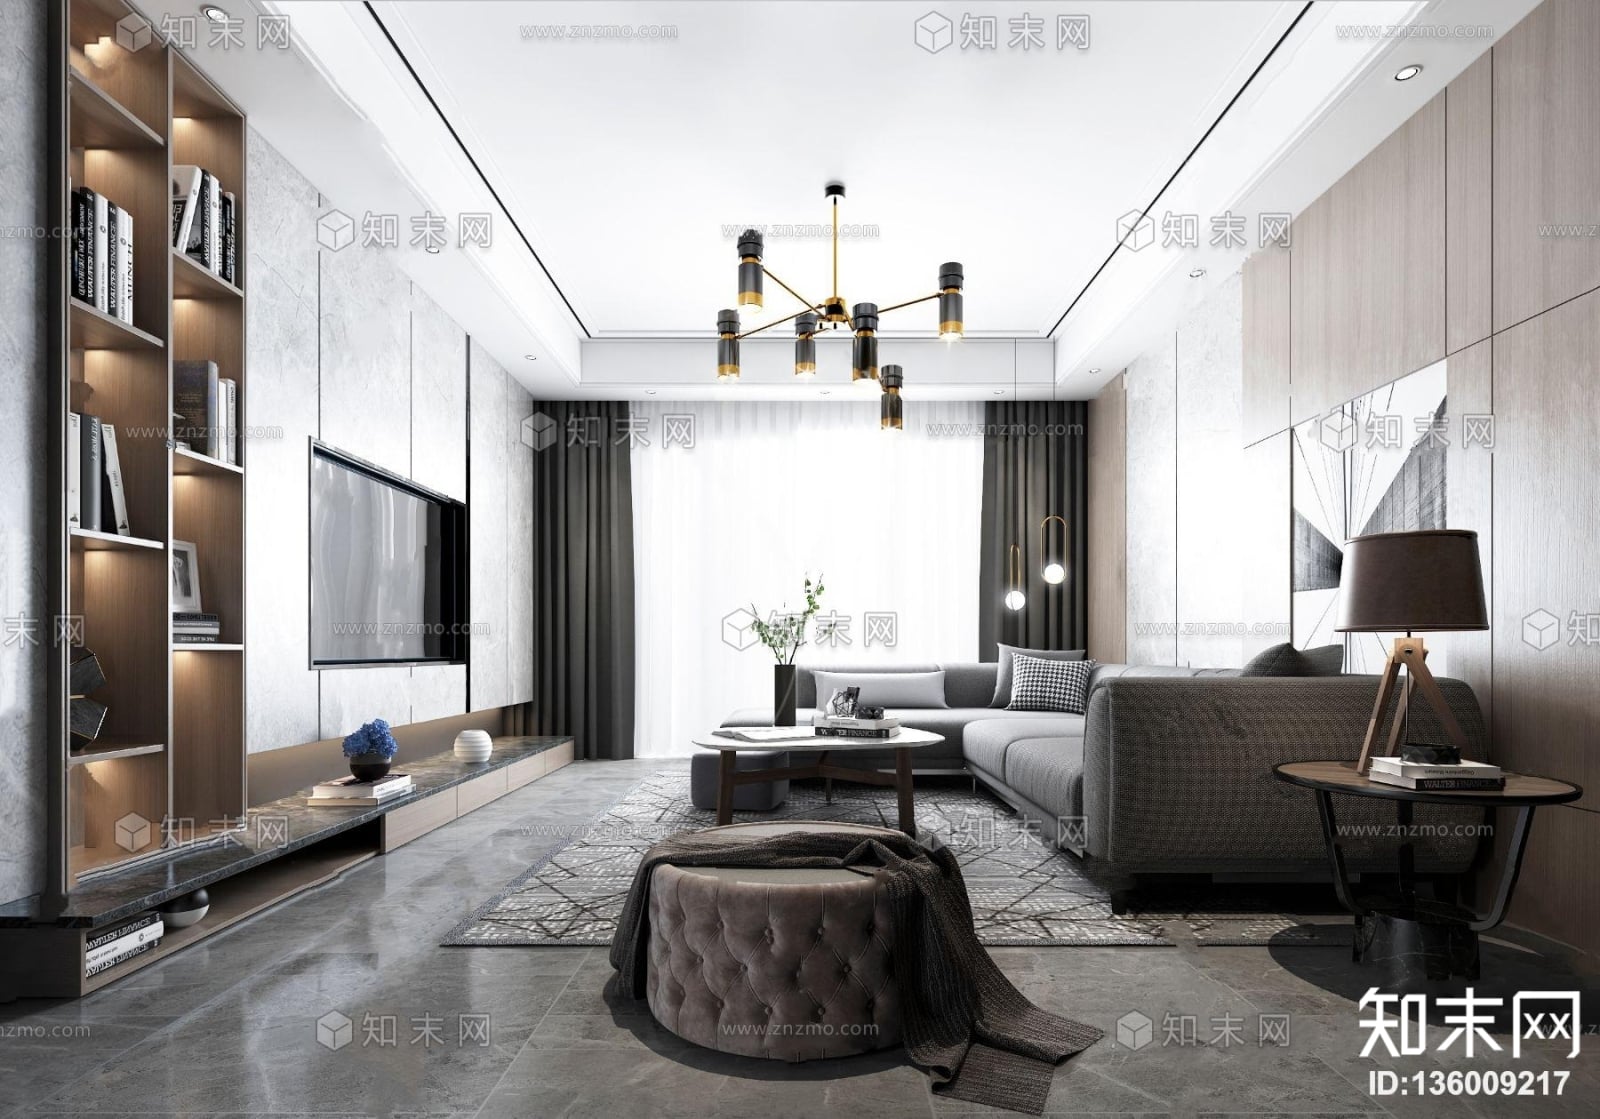 3D Interior Model Living room 0528 Scene 3dsmax